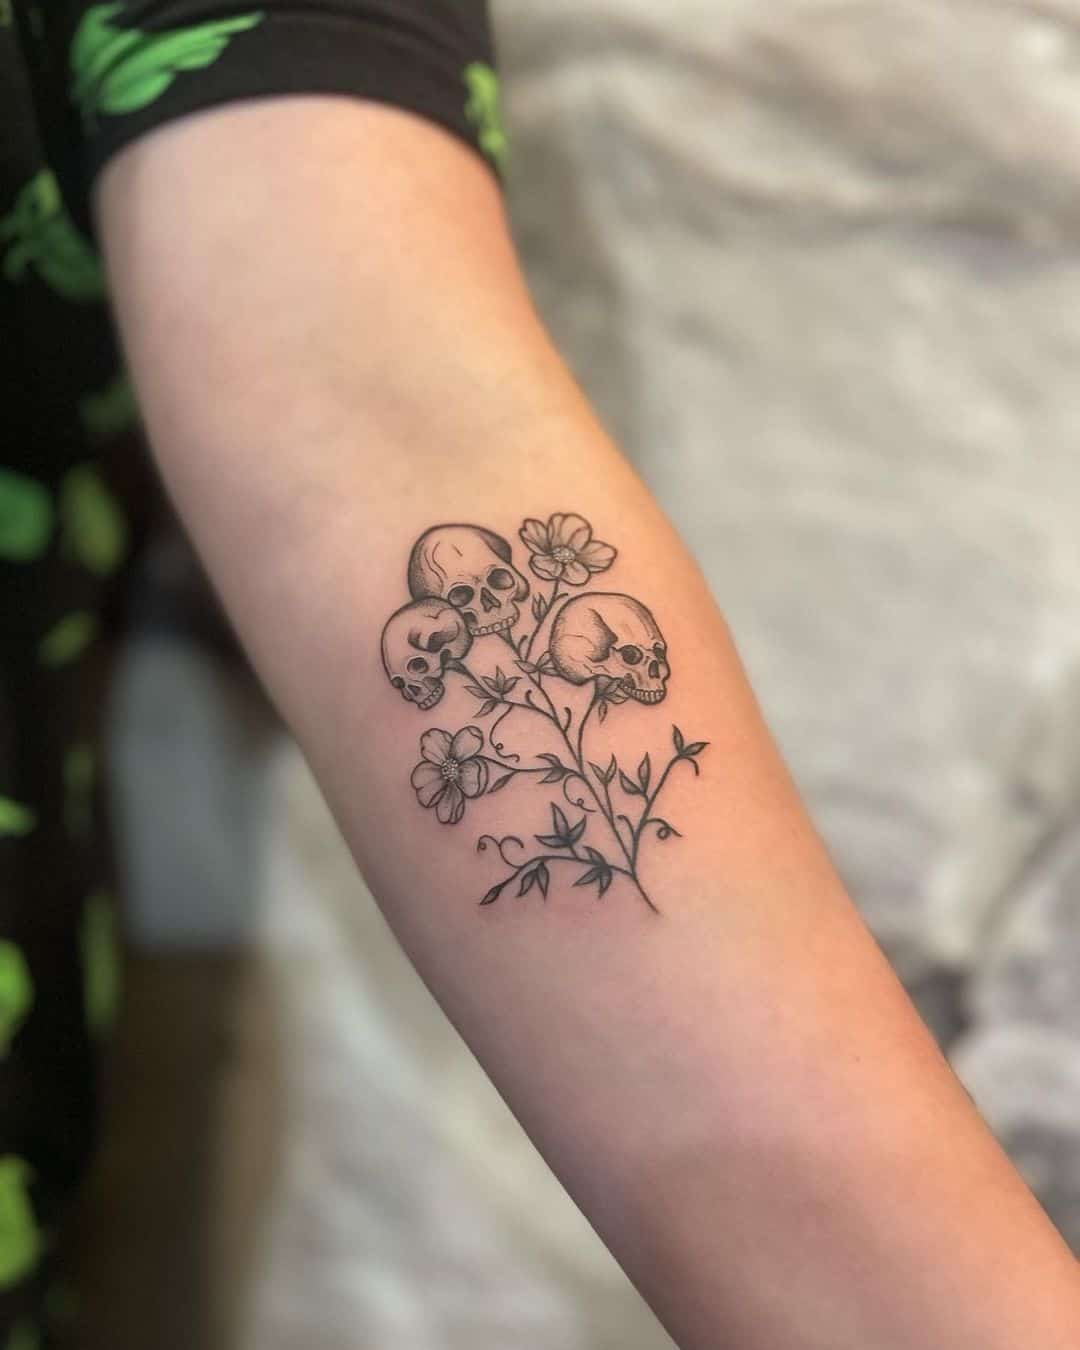 Skull and flower tattoo design